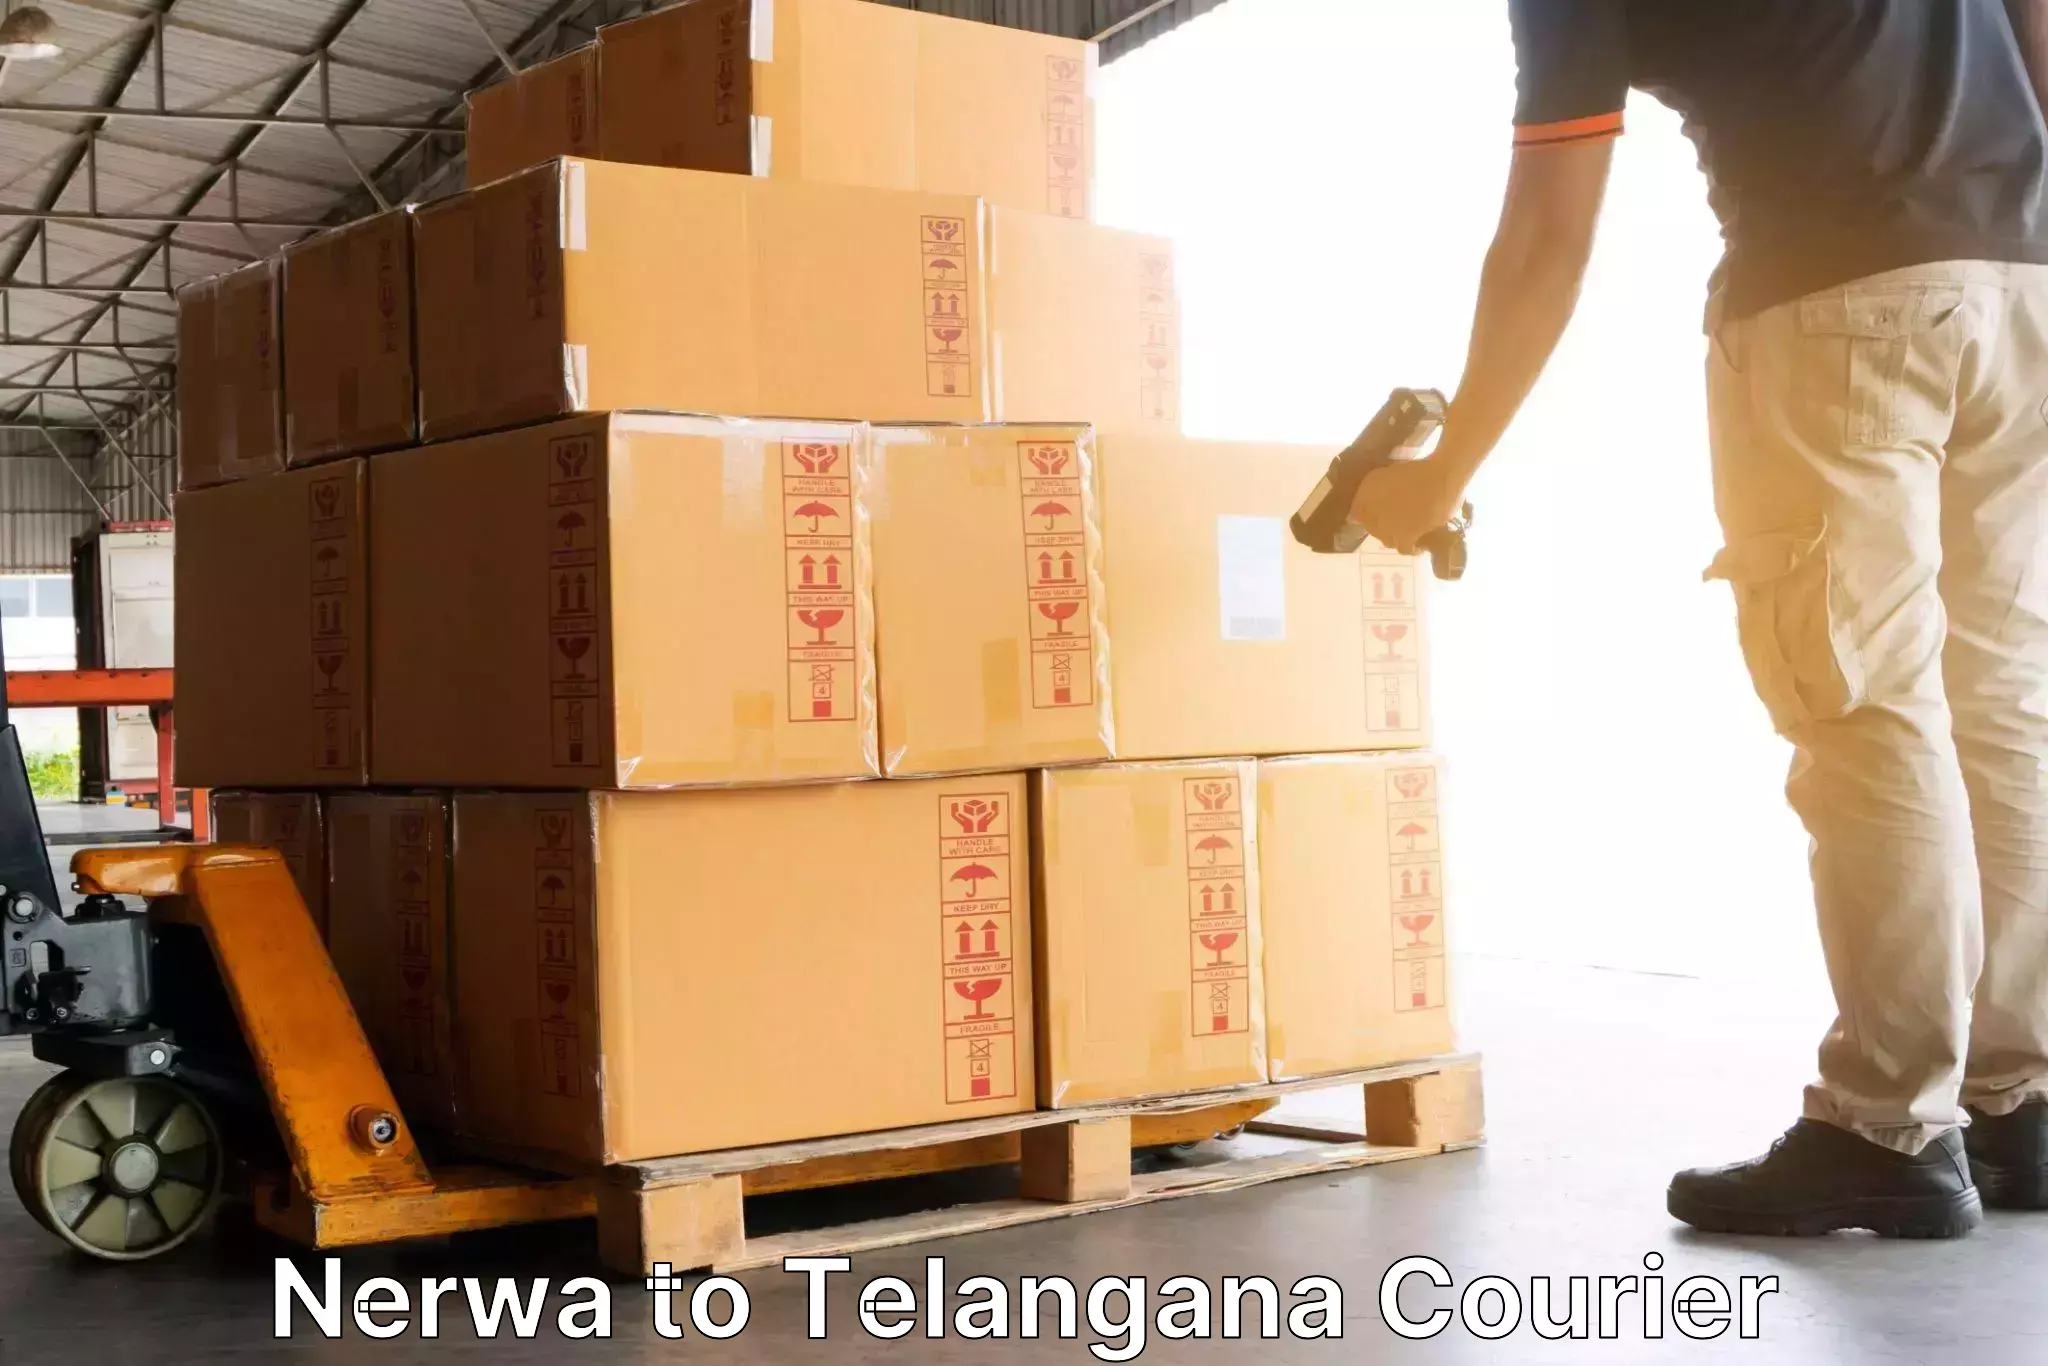 Discount courier rates Nerwa to Vikarabad